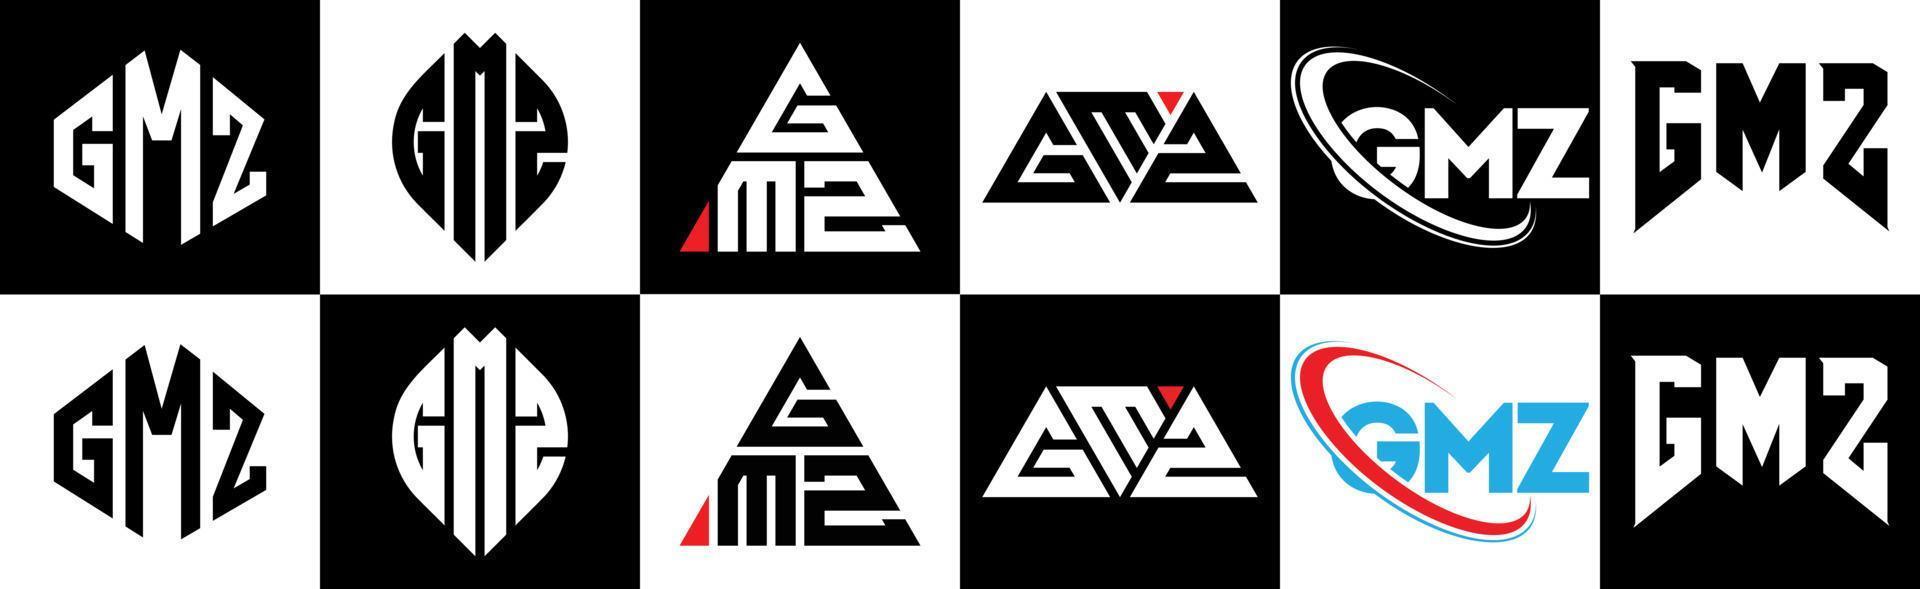 gmz-Buchstaben-Logo-Design in sechs Stilen. gmz polygon, kreis, dreieck, sechseck, flach und einfacher stil mit schwarz-weißem buchstabenlogo in einer zeichenfläche. gmz minimalistisches und klassisches logo vektor